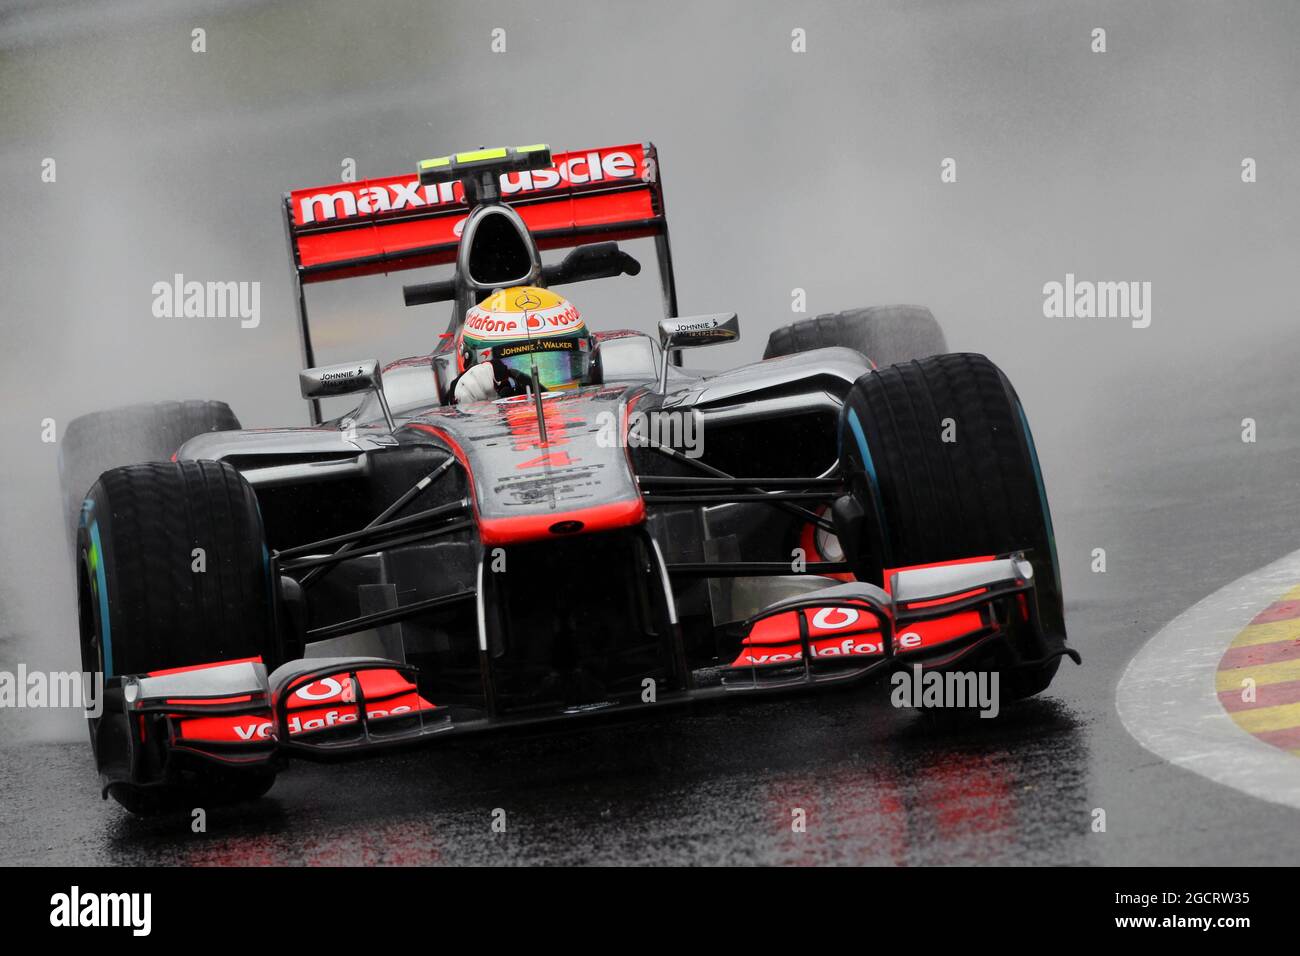 Lewis Hamilton (GBR) McLaren MP4/27. Grand Prix de Belgique, vendredi 31 août 2012. Spa-Francorchamps, Belgique. Banque D'Images